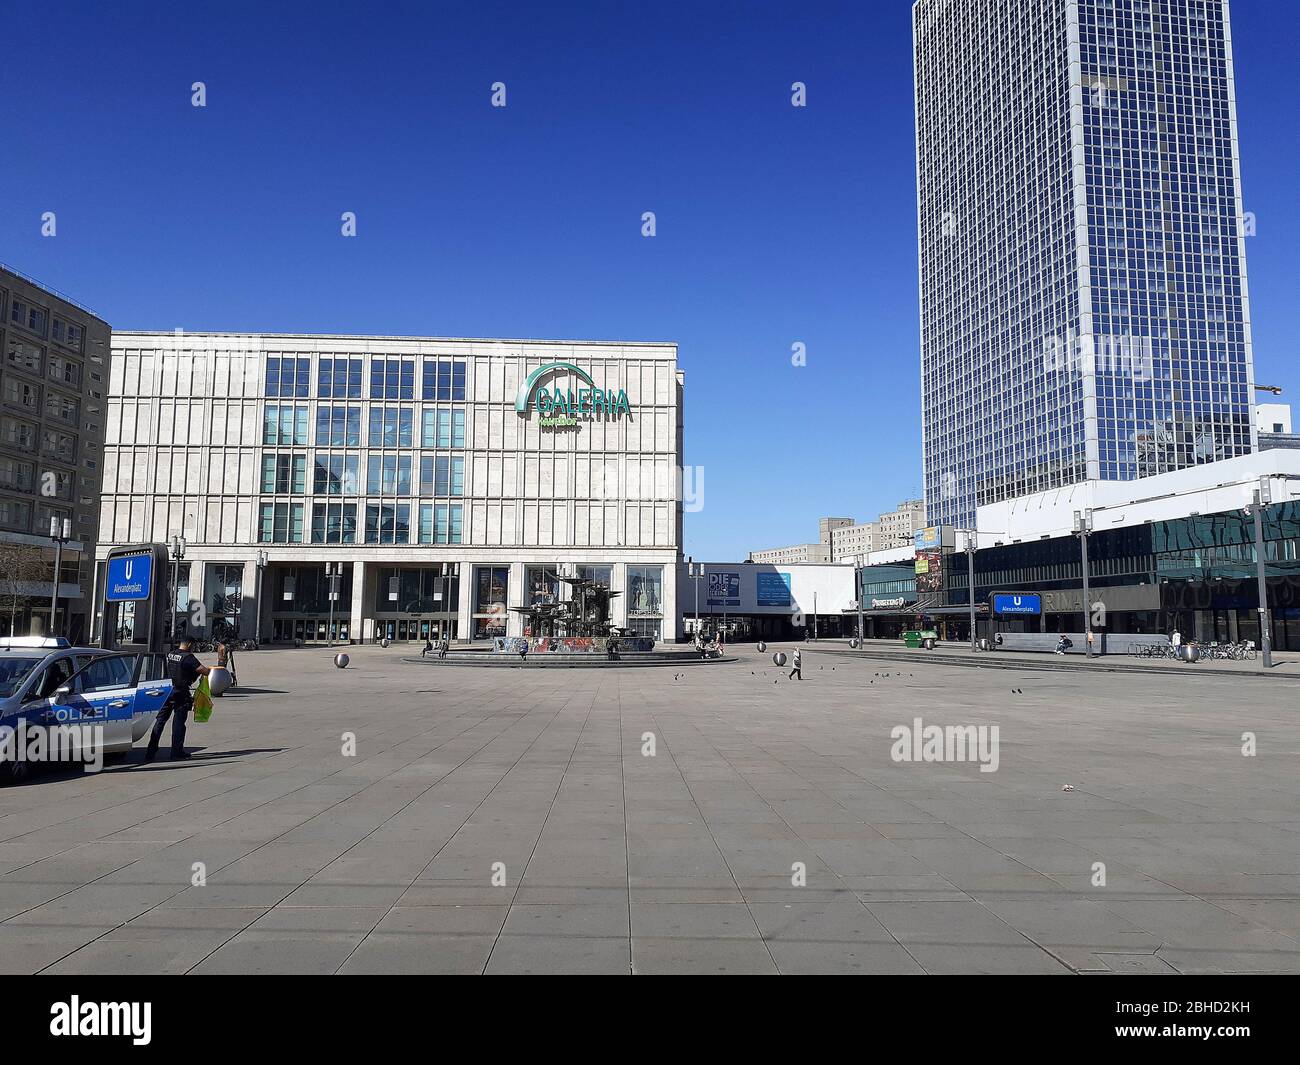 Ein verlassener Alexanderplatz mit der Polizei, die während der Blockadeblockung wegen der Coronavirus-Pandemie keine Gruppentämungen mehr gewährleistet, April 2020, Berlin, Deutschland Stockfoto